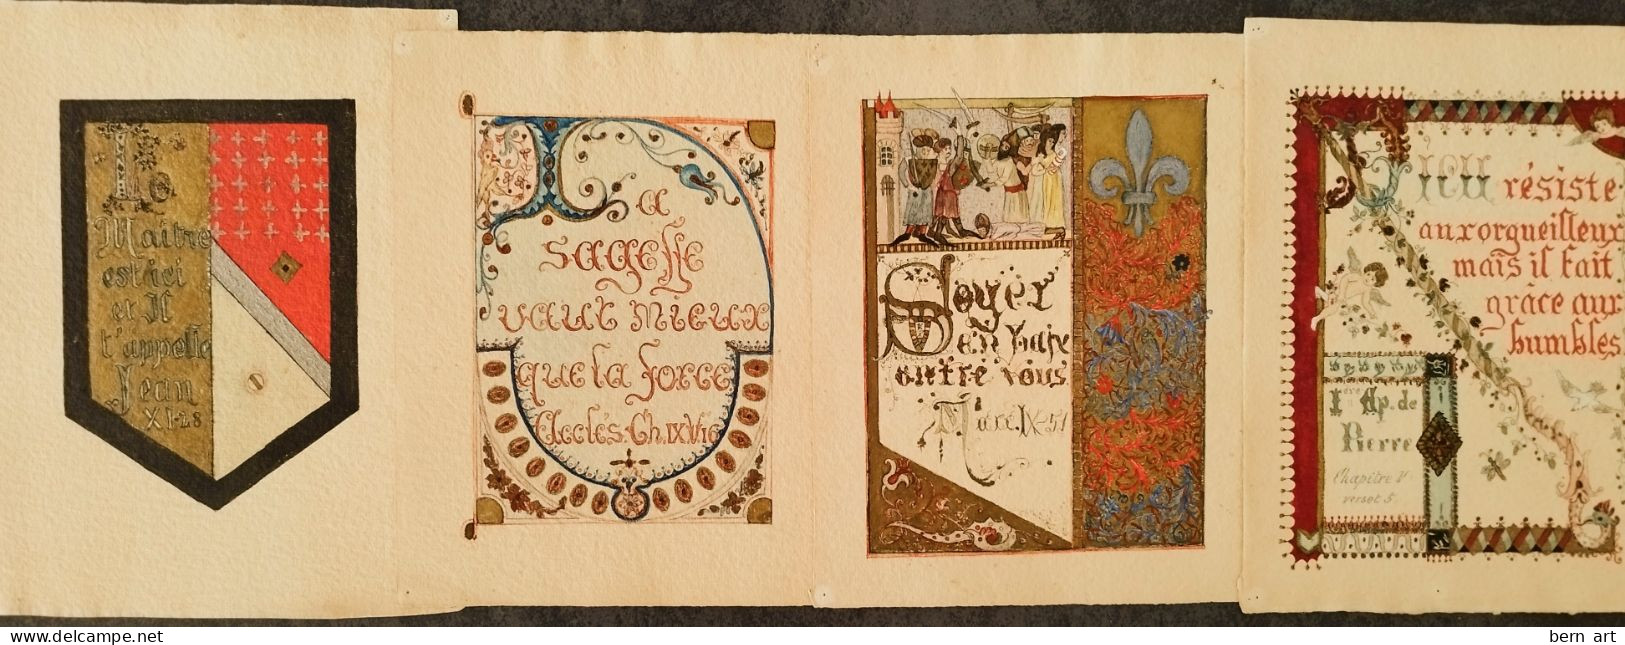 4 Enluminures Fin XIXè Sur Papier J. WHATMAN. Fond D'Atelier Artiste B.F. (Berthe Flournoy) Vers 1900 (Genève) - Acuarelas